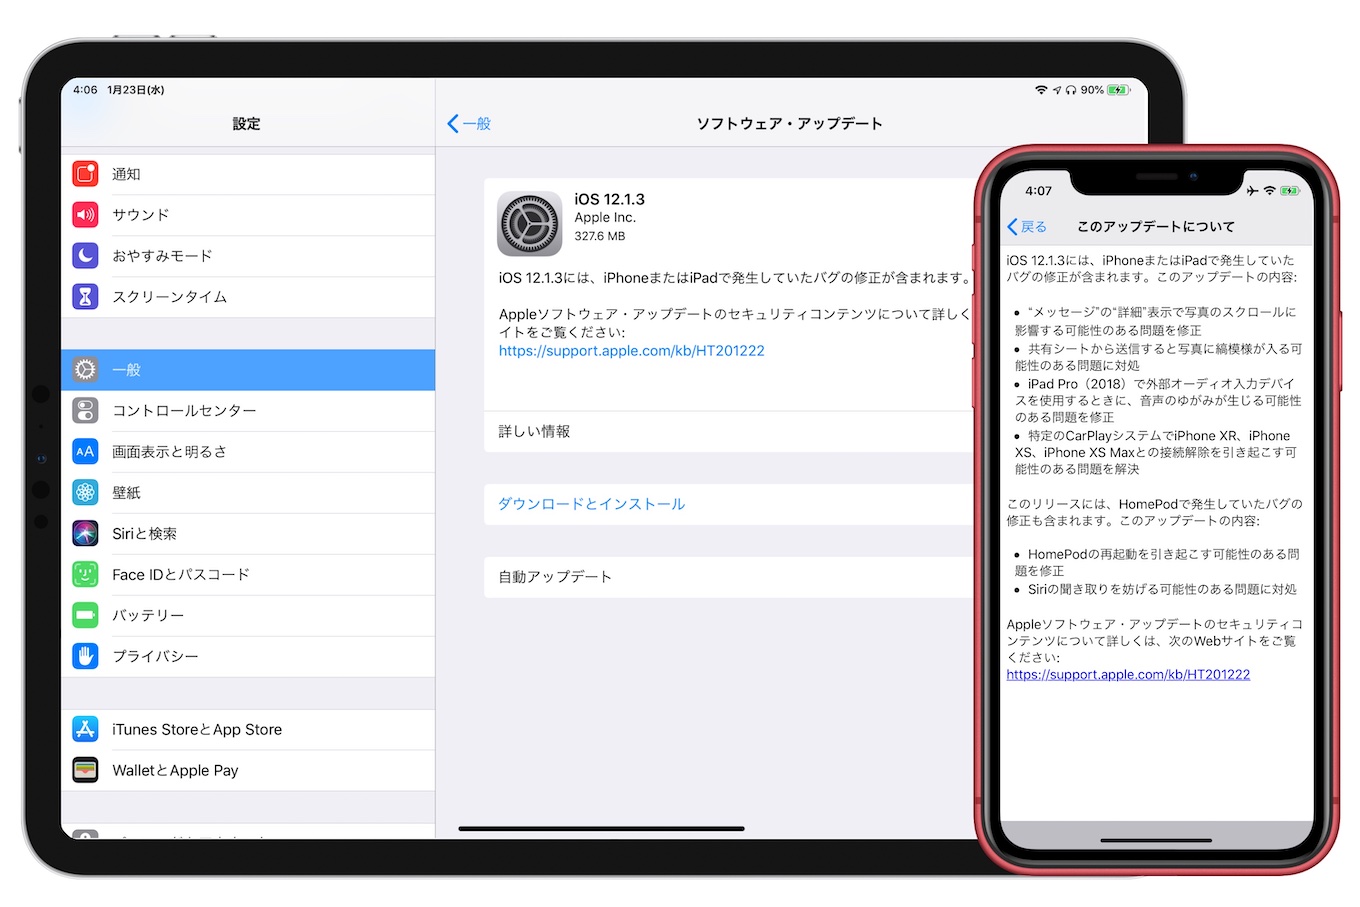 iOS 12.1.3 Update